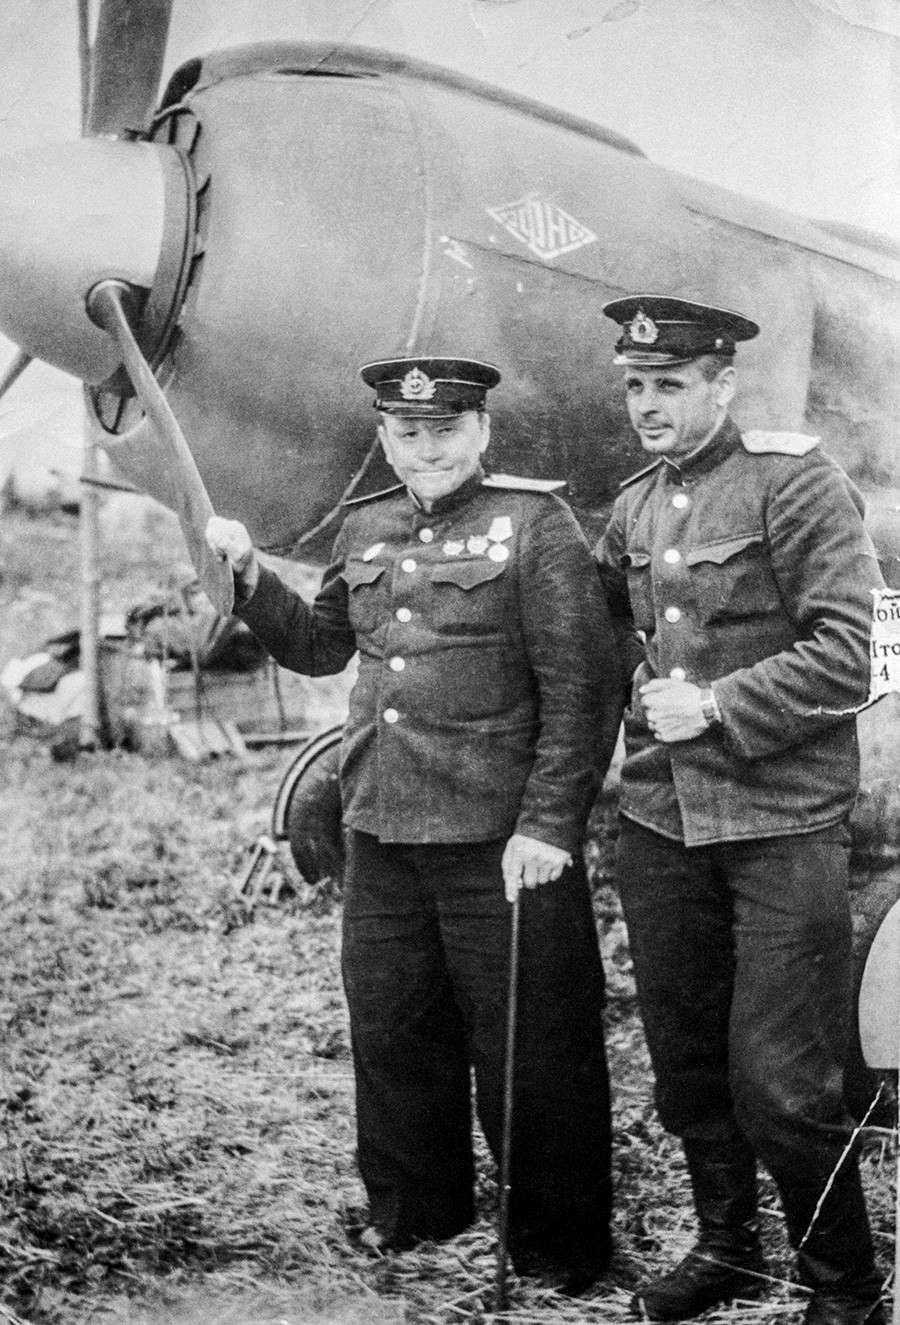 СССР, 1944 година. Пилотът Леонид Белоусов и командирът на разузнавателната ескадрила Григорий Шулей, стоящ близо до самолета.